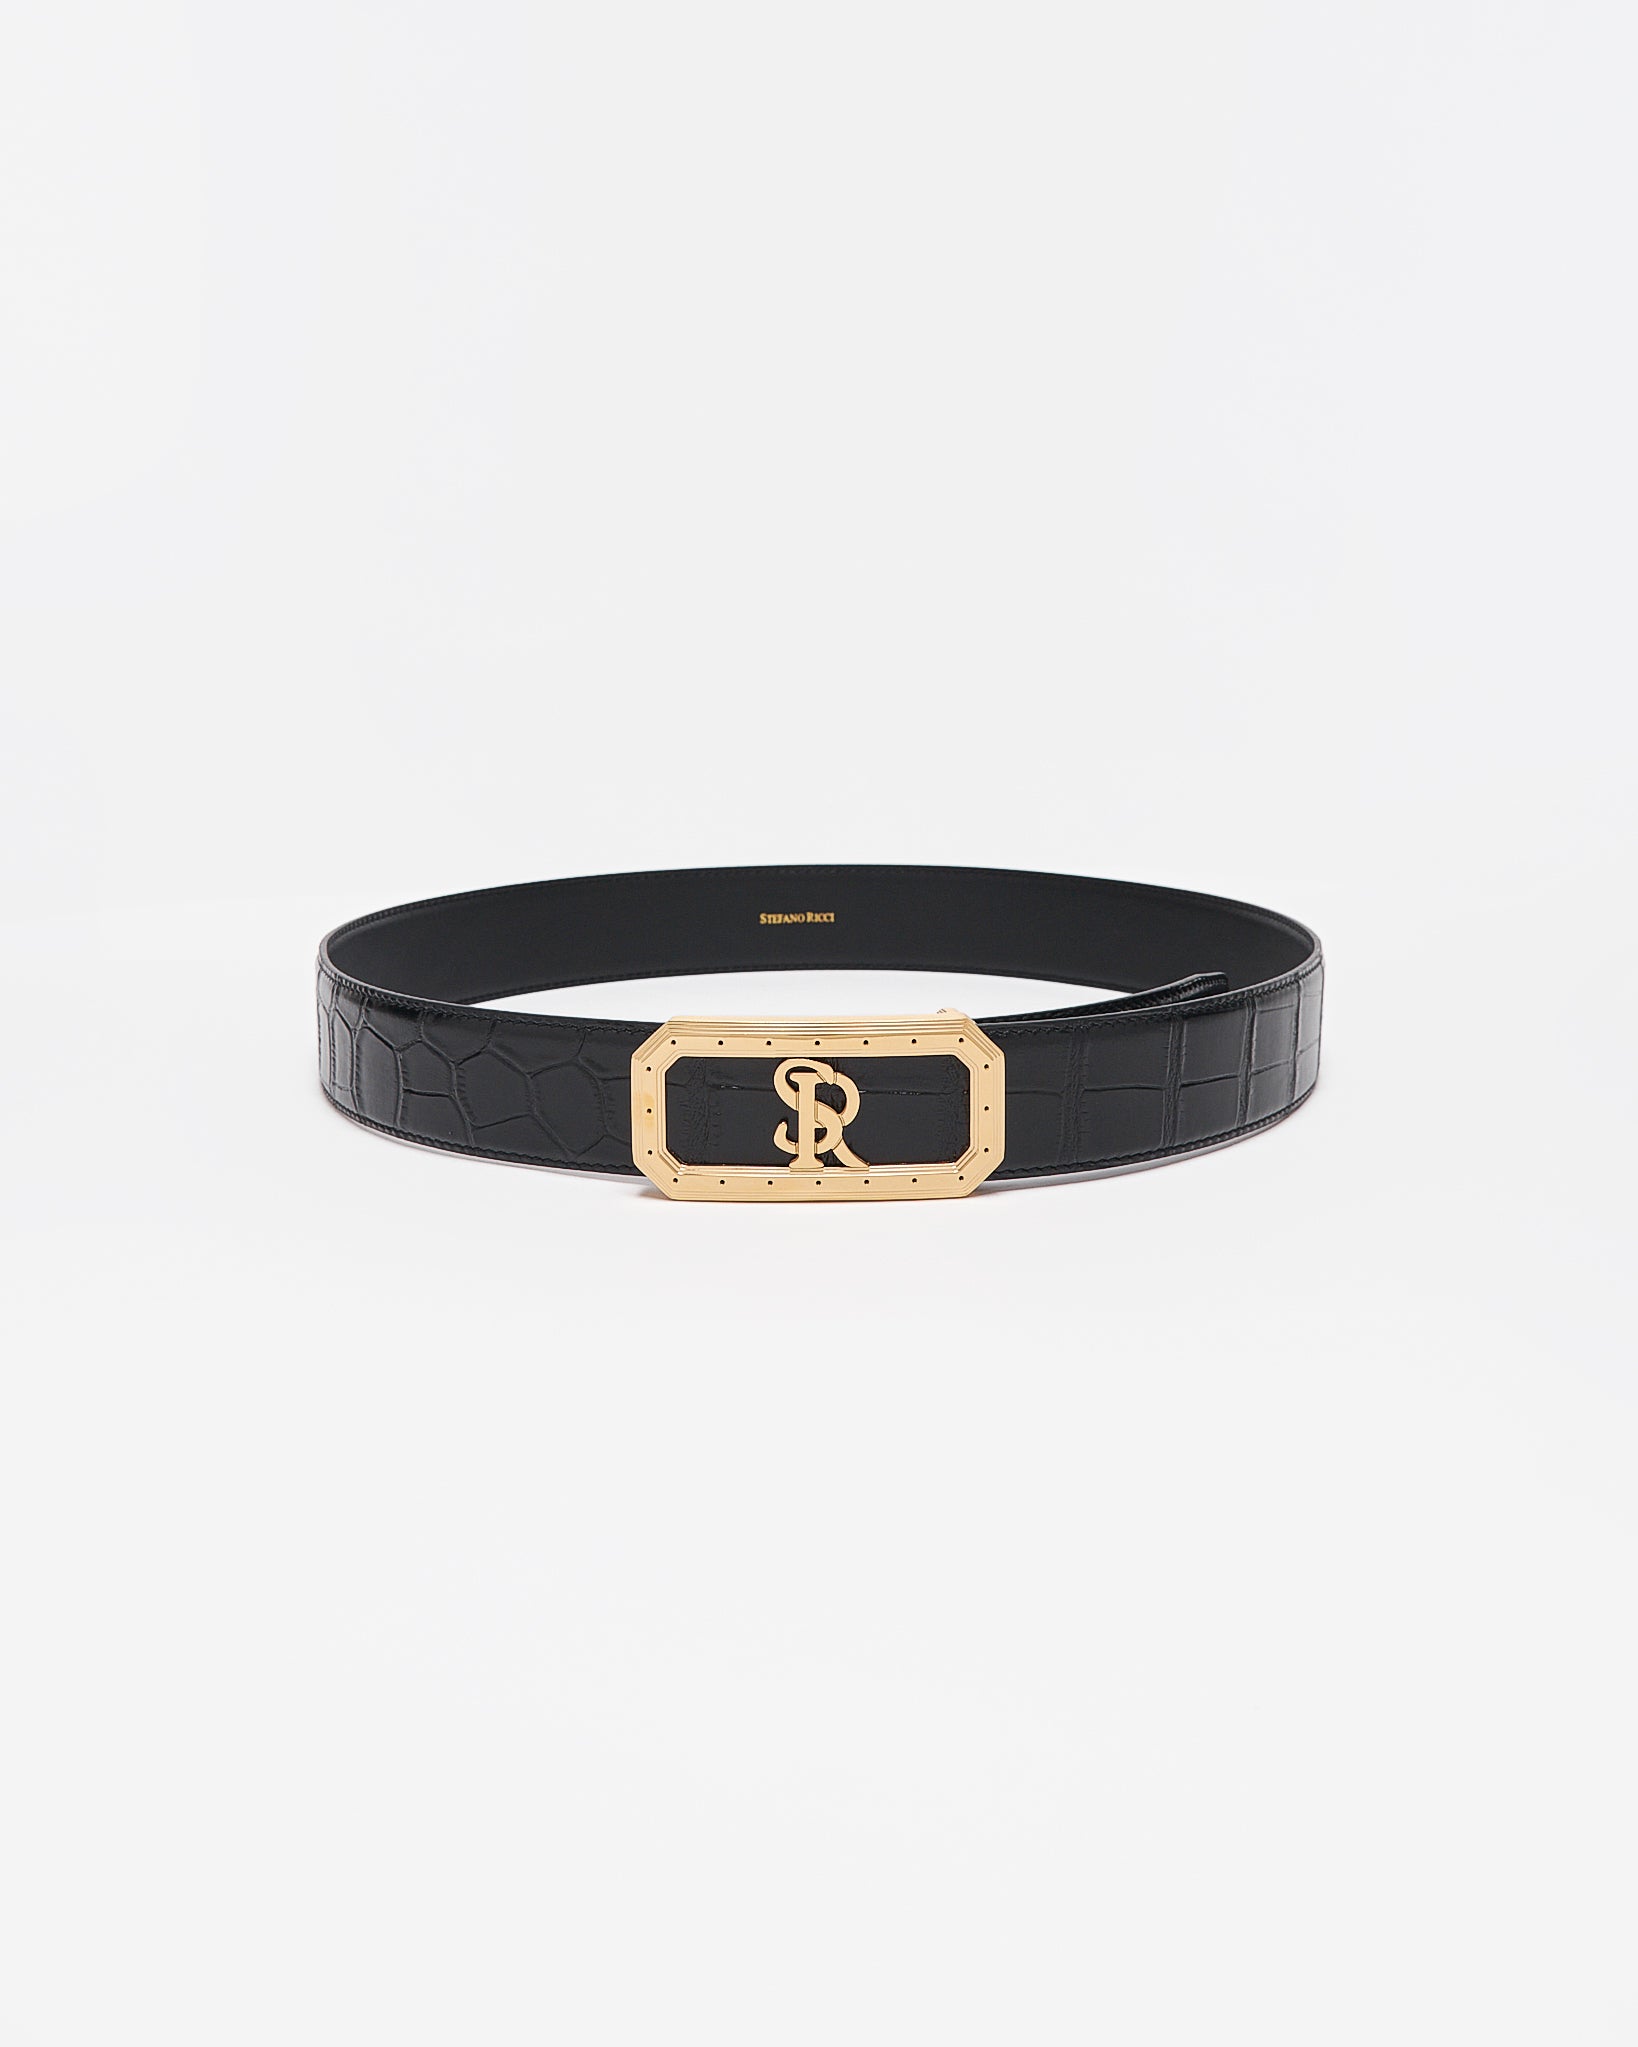 SR Gold Logo Men Black Leather Belt 95.90